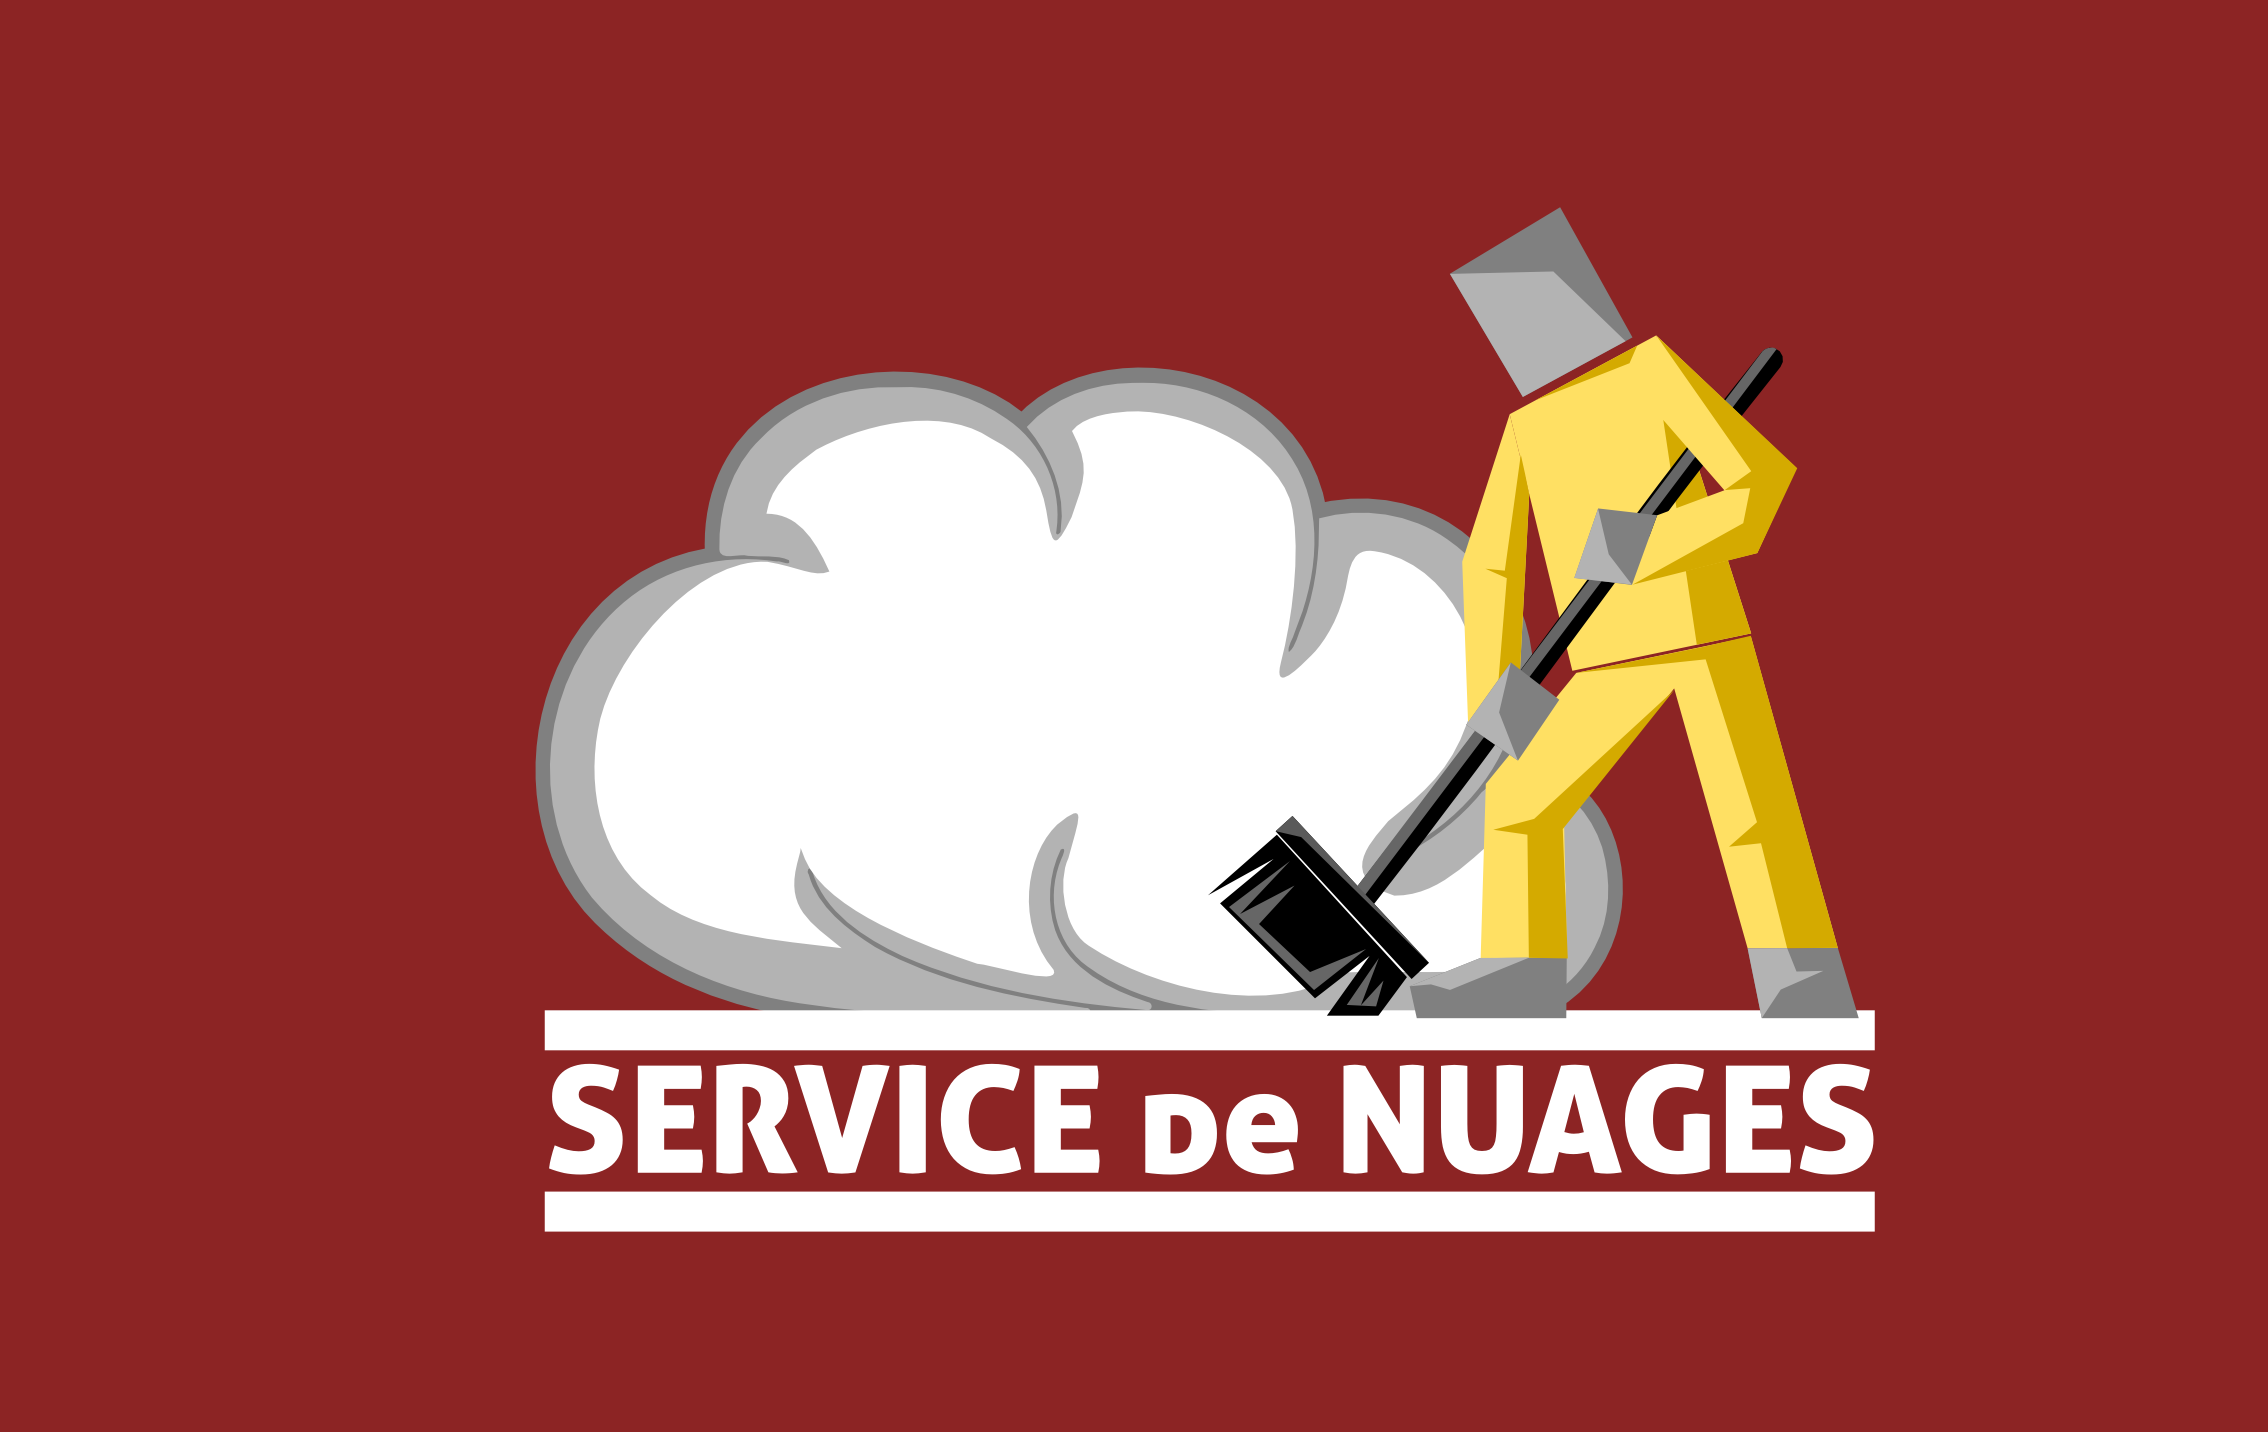 "Service des nuages" logotype.